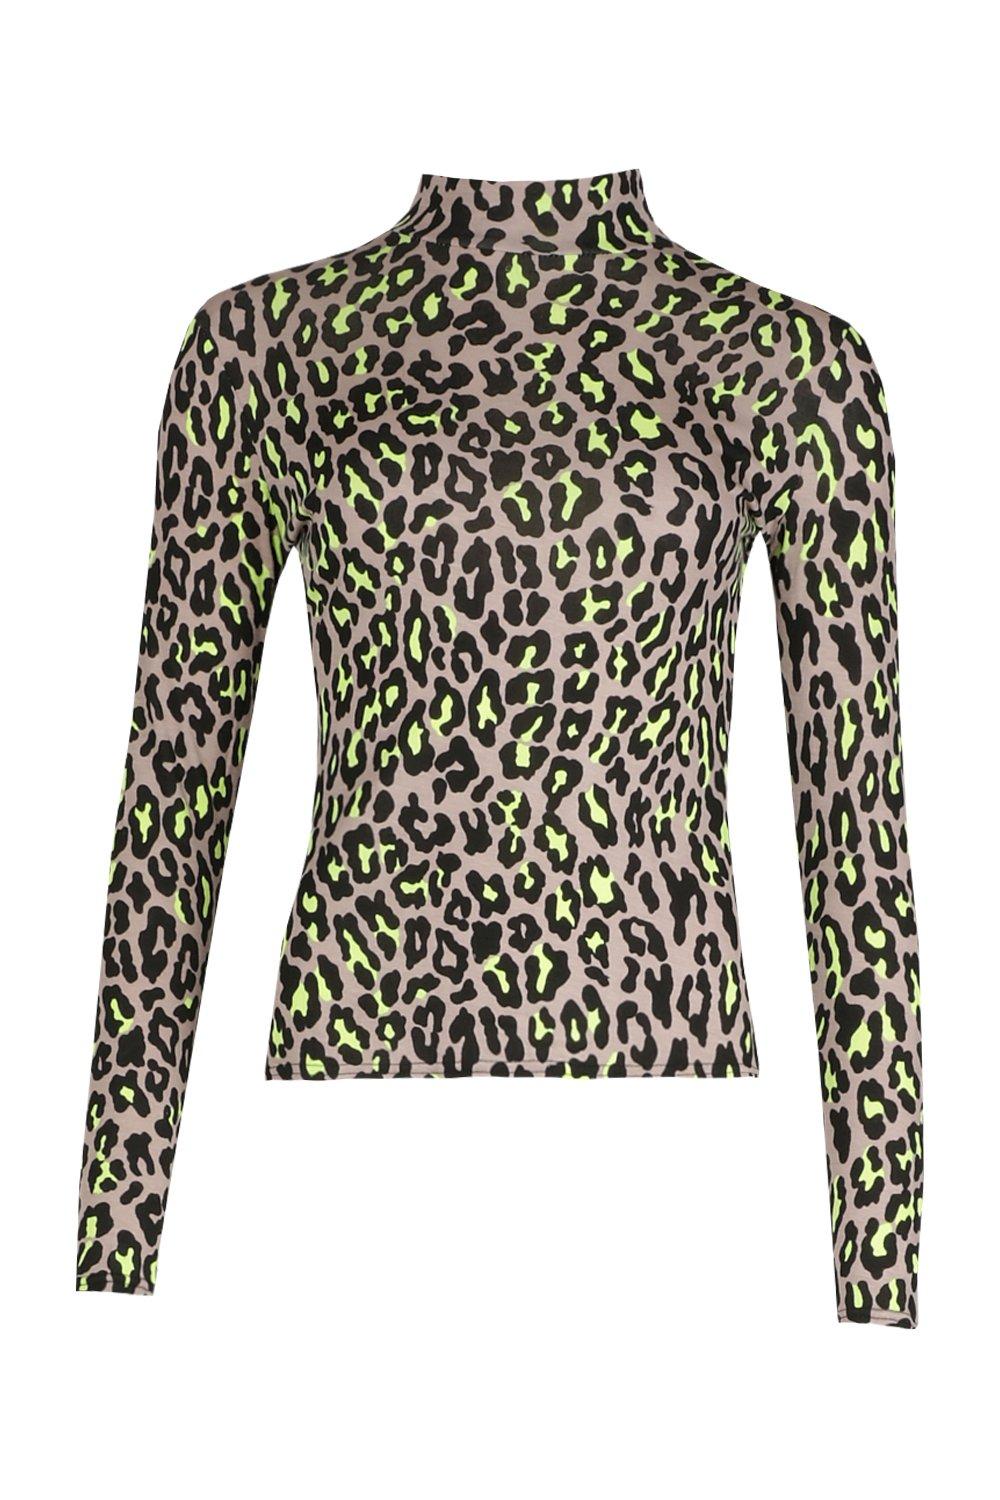 Leopard Femme Col Roulé Manches Longues Imprimé Fête Streetwear Blouses & Chemises 